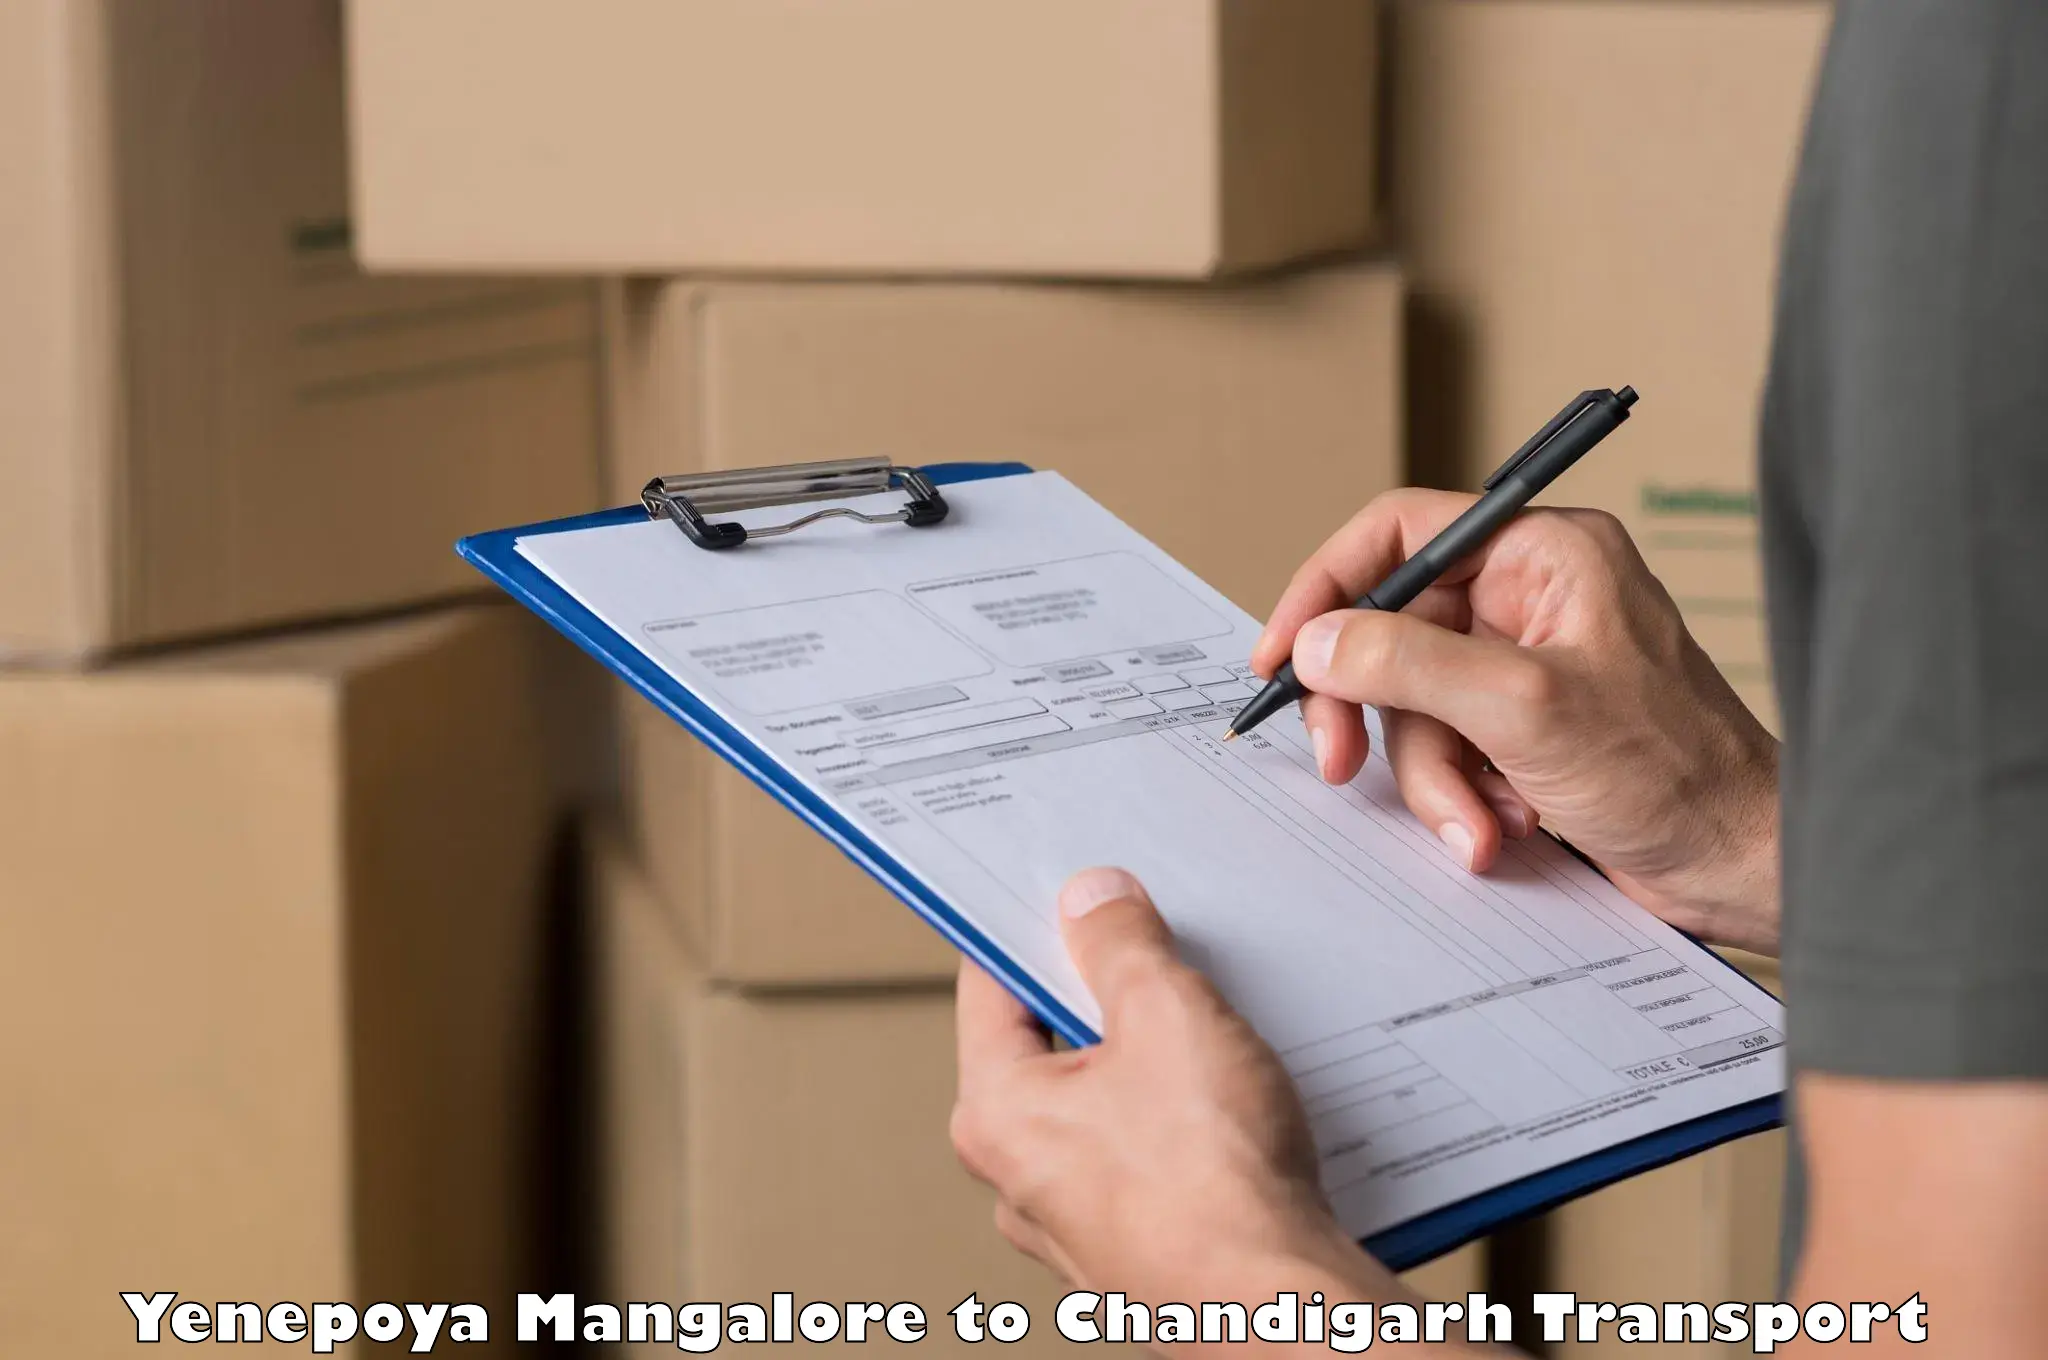 Shipping partner Yenepoya Mangalore to Chandigarh